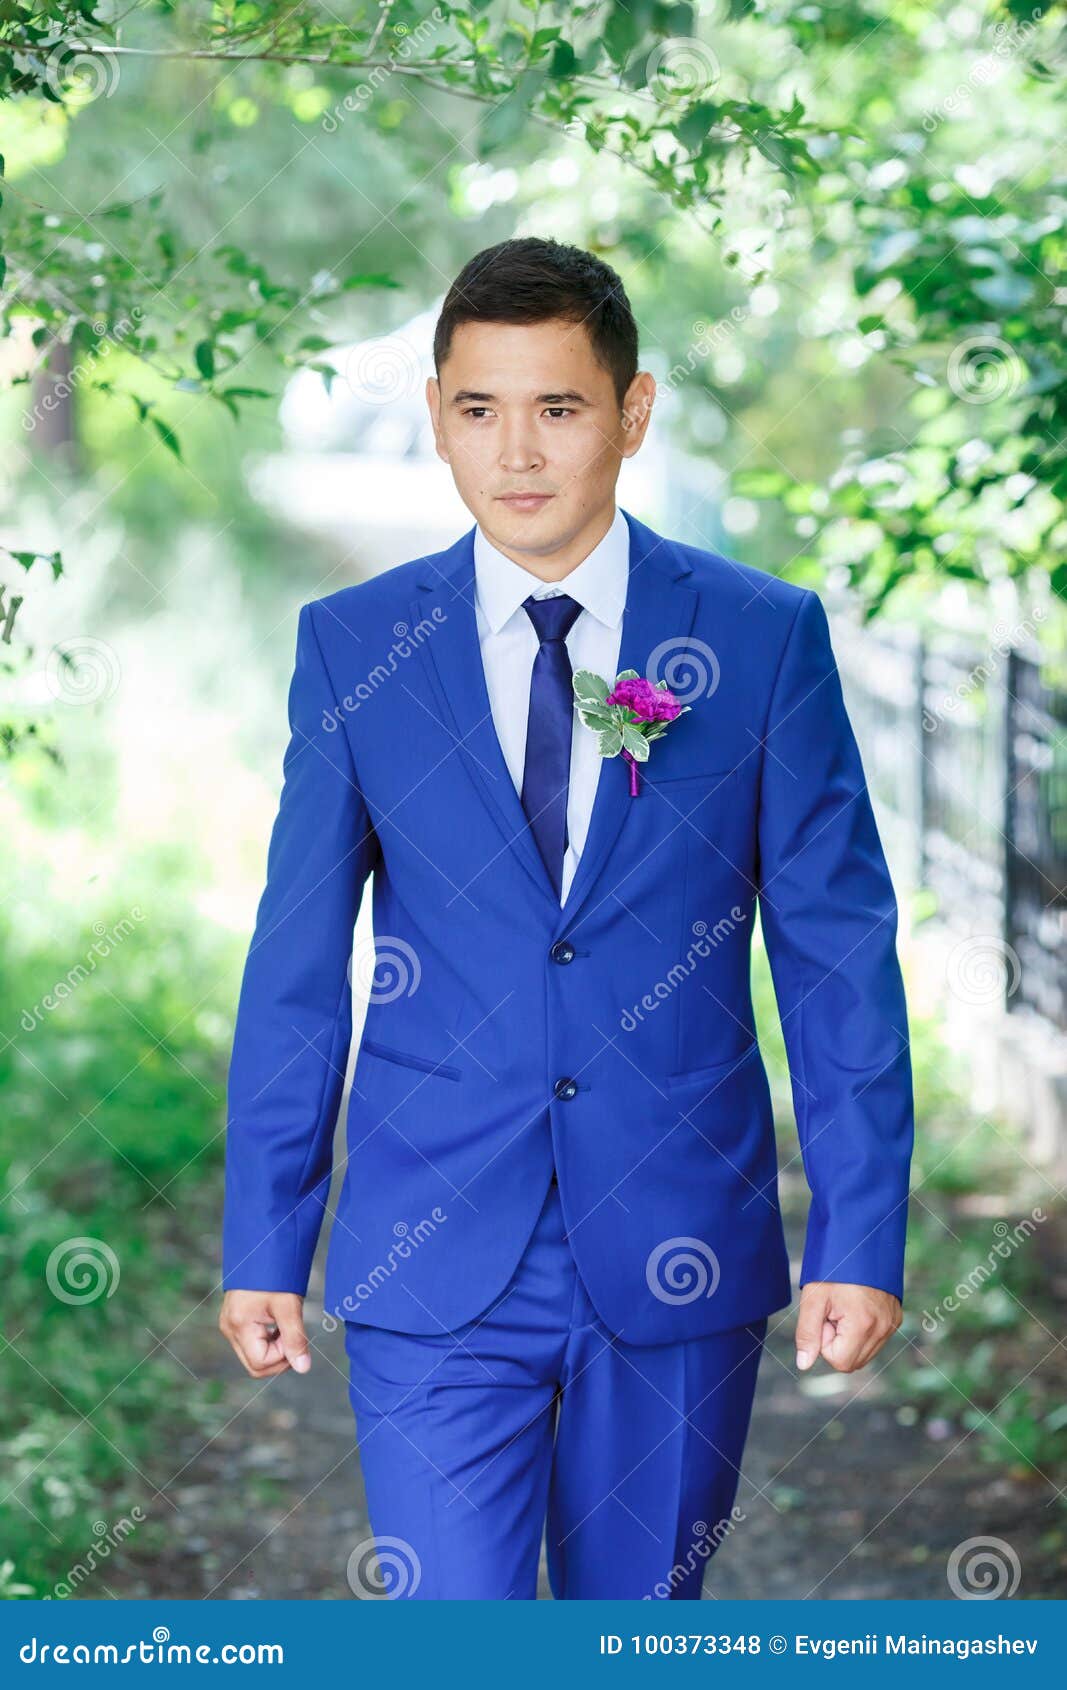 Modelo Masculino, El Retrato Del Novio En Traje Azul Con Boutonniere Entre El Follaje Verde En Un Día De Boda Foto de archivo - Imagen de juego, hierba: